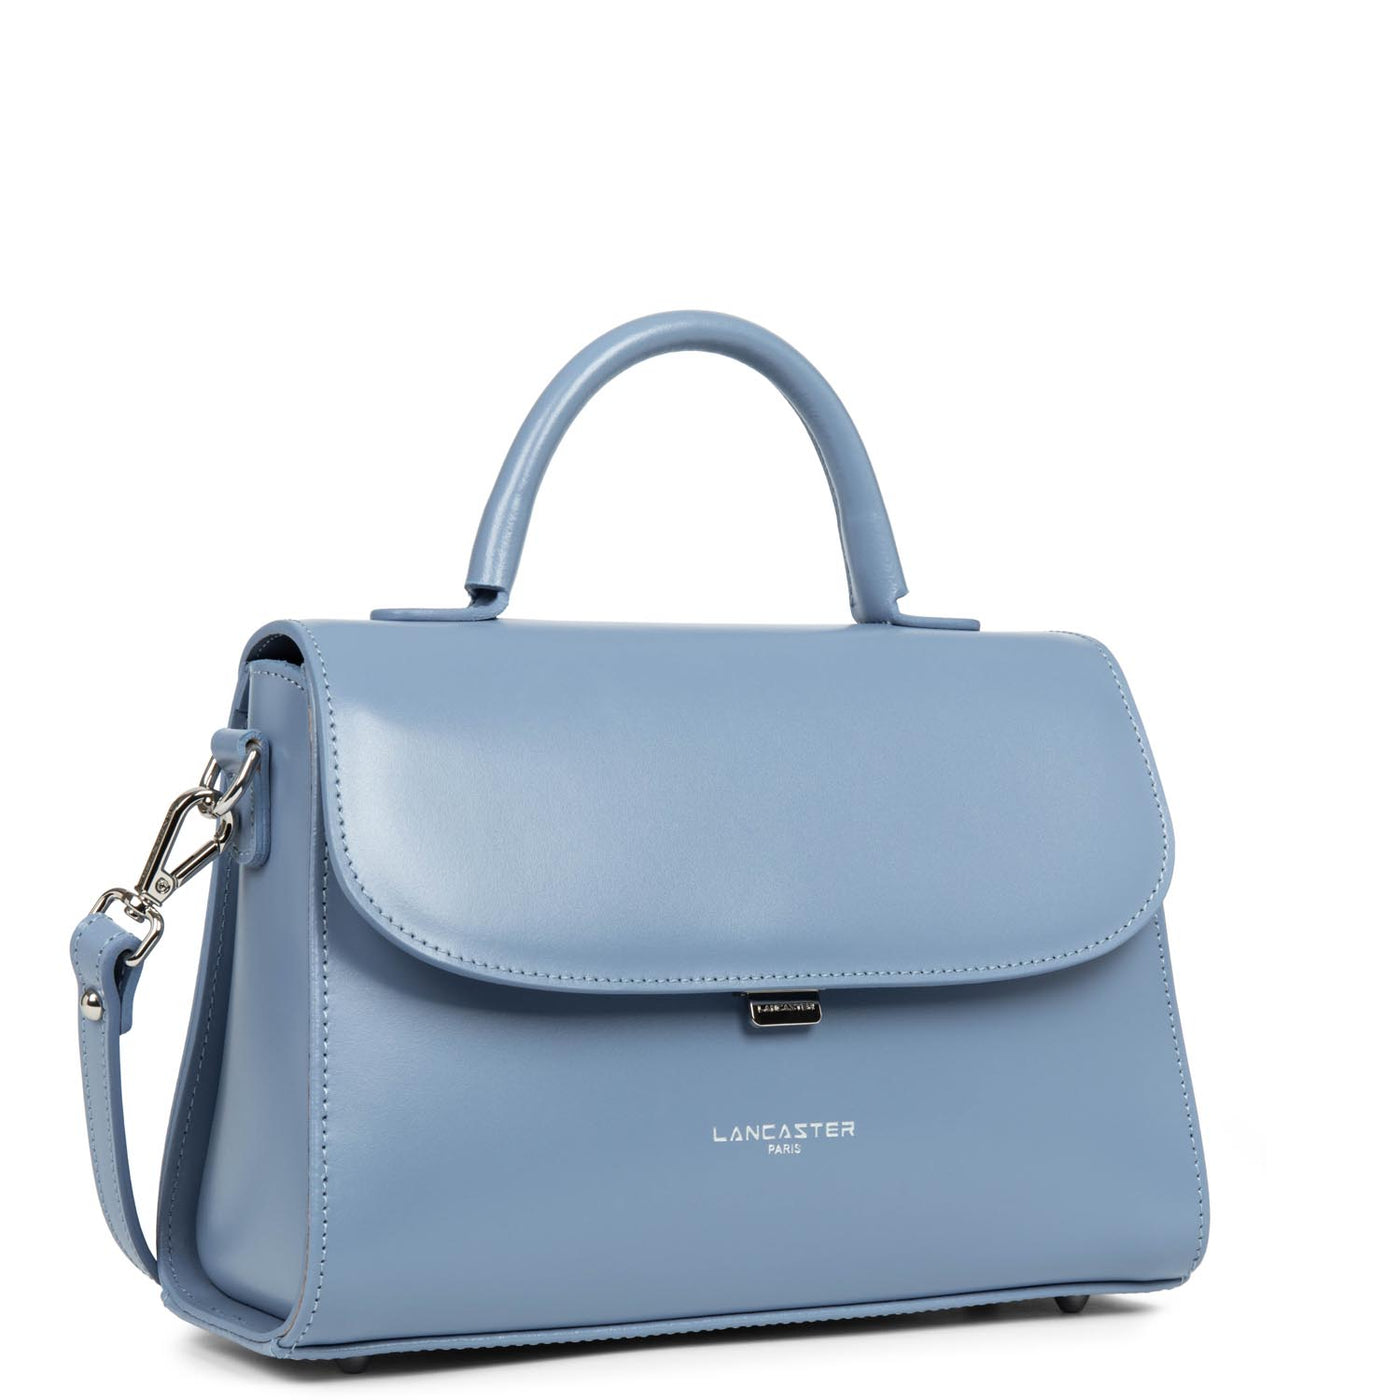 m handbag - suave even #couleur_bleu-stone